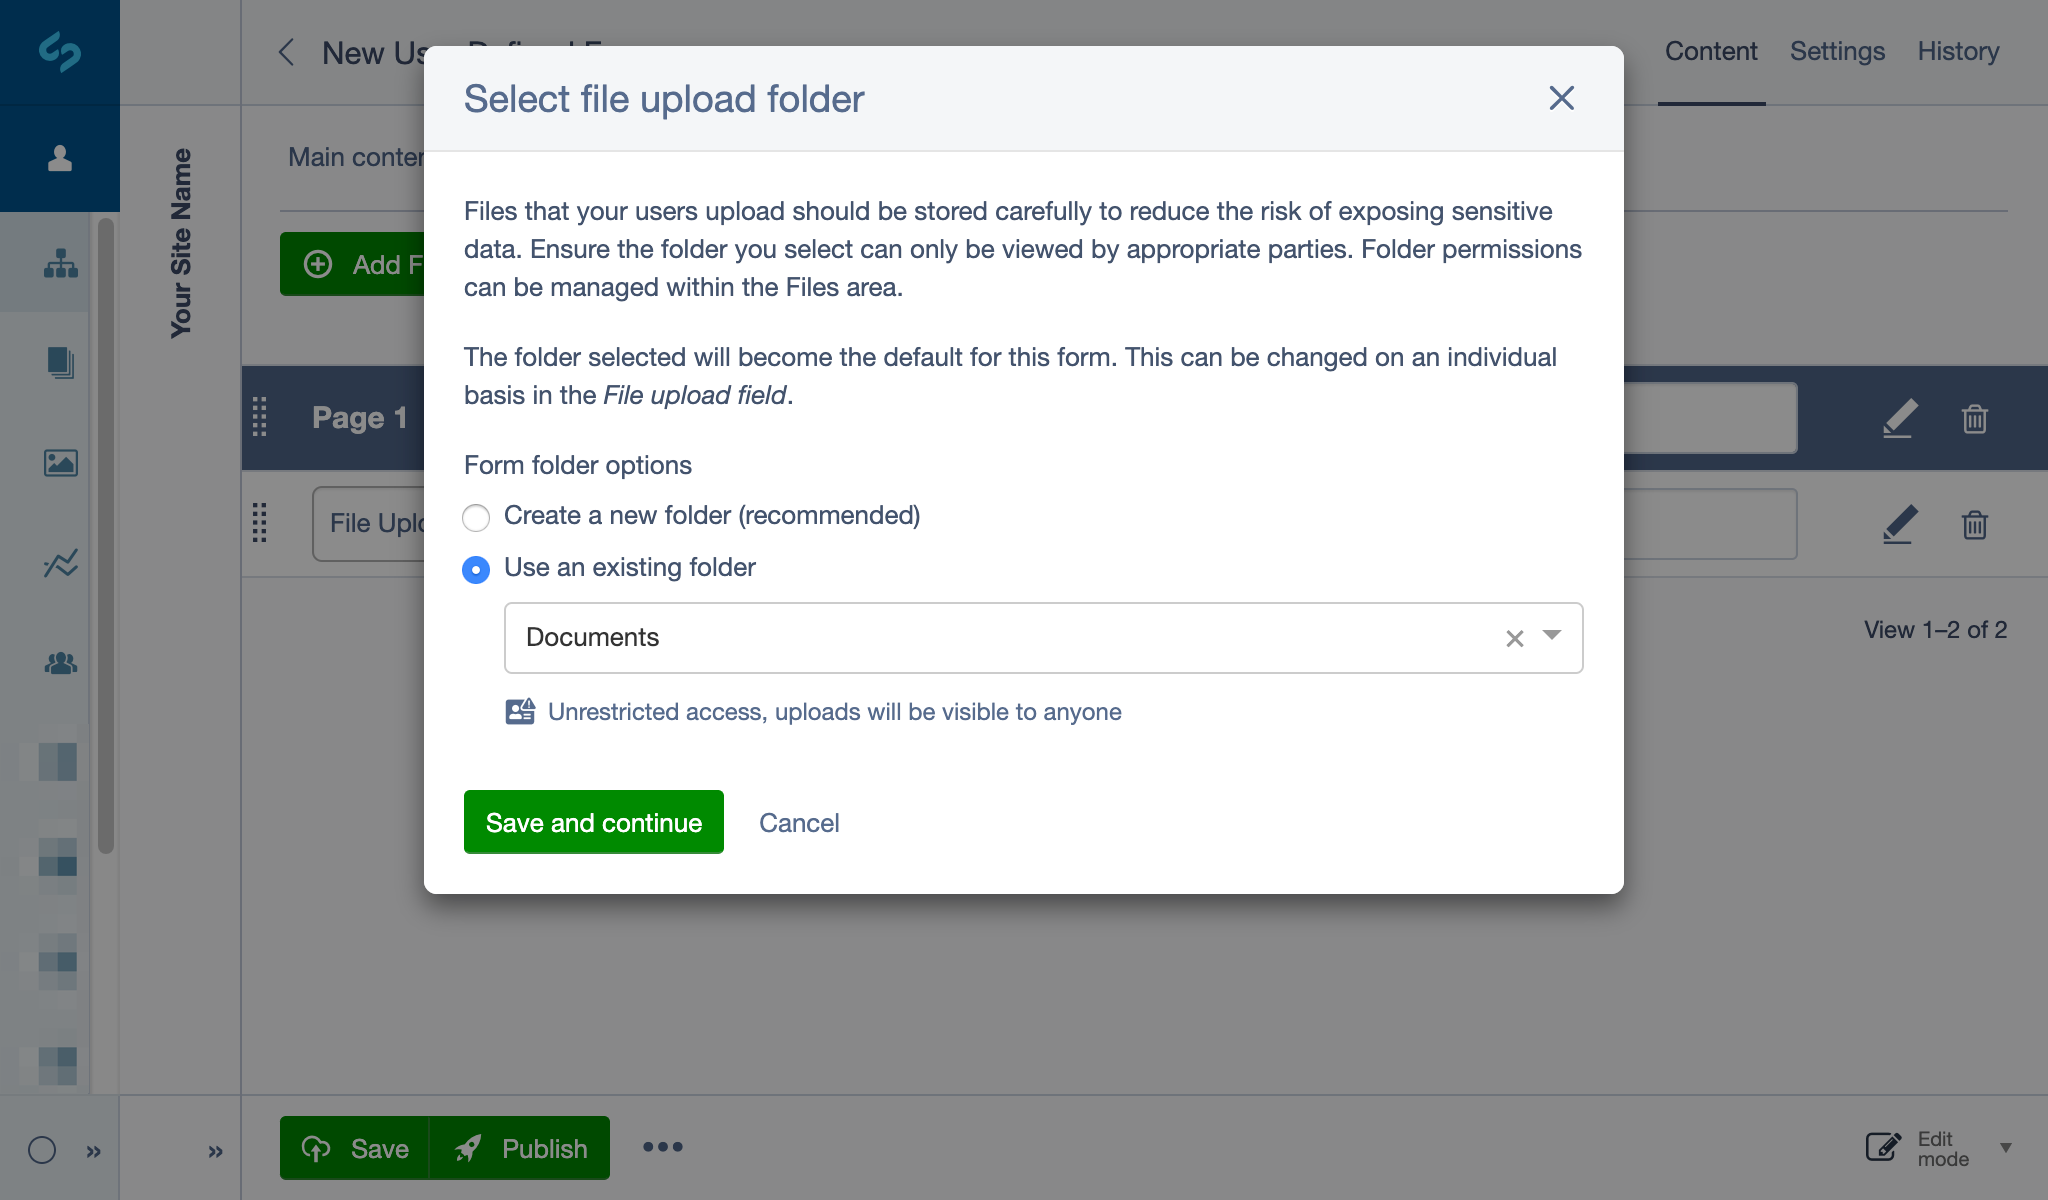 Use existing folder option